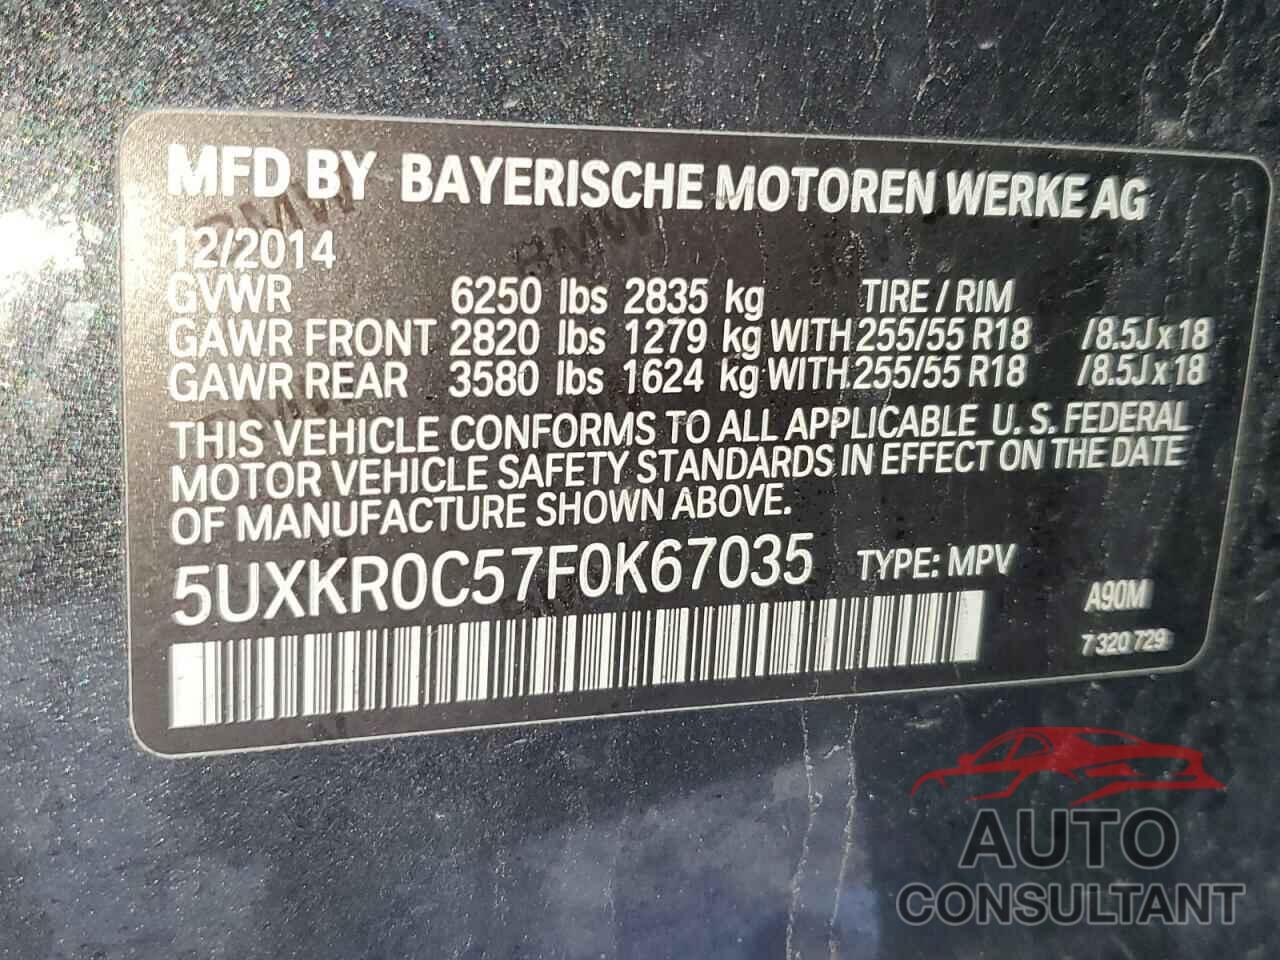 BMW X5 2015 - 5UXKR0C57F0K67035